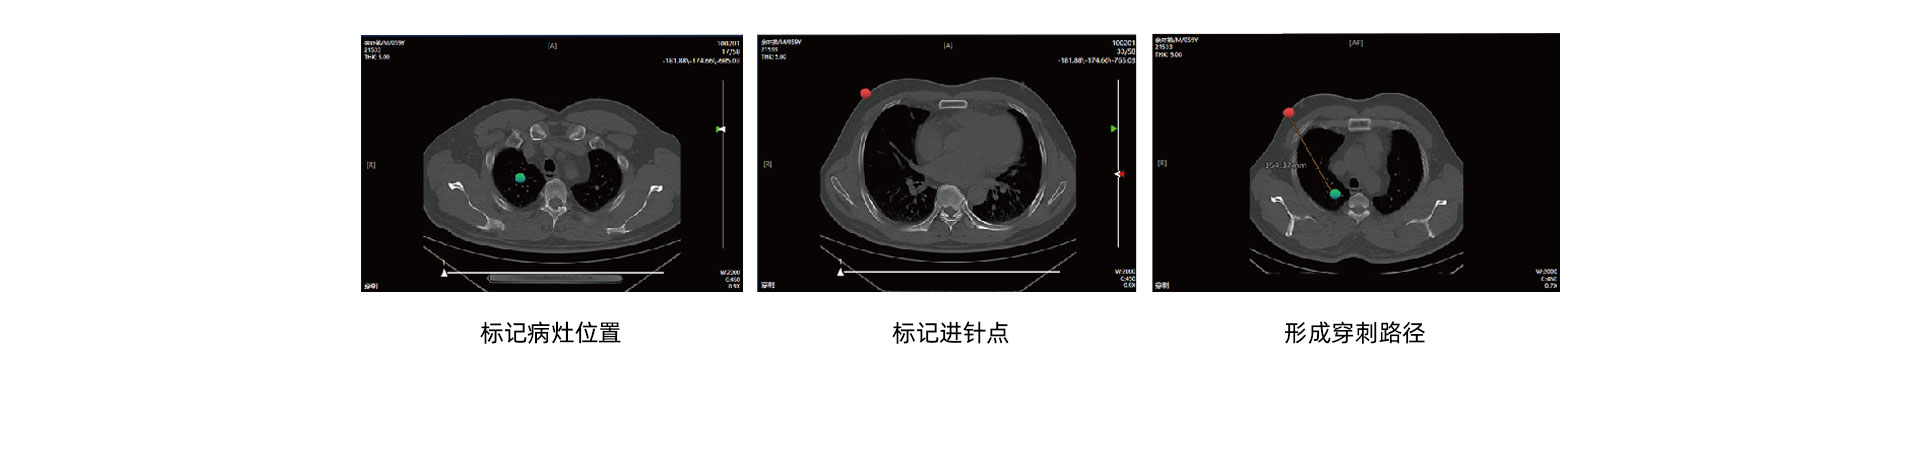 (影像介入)CT介入手术移动工作站_05.jpg